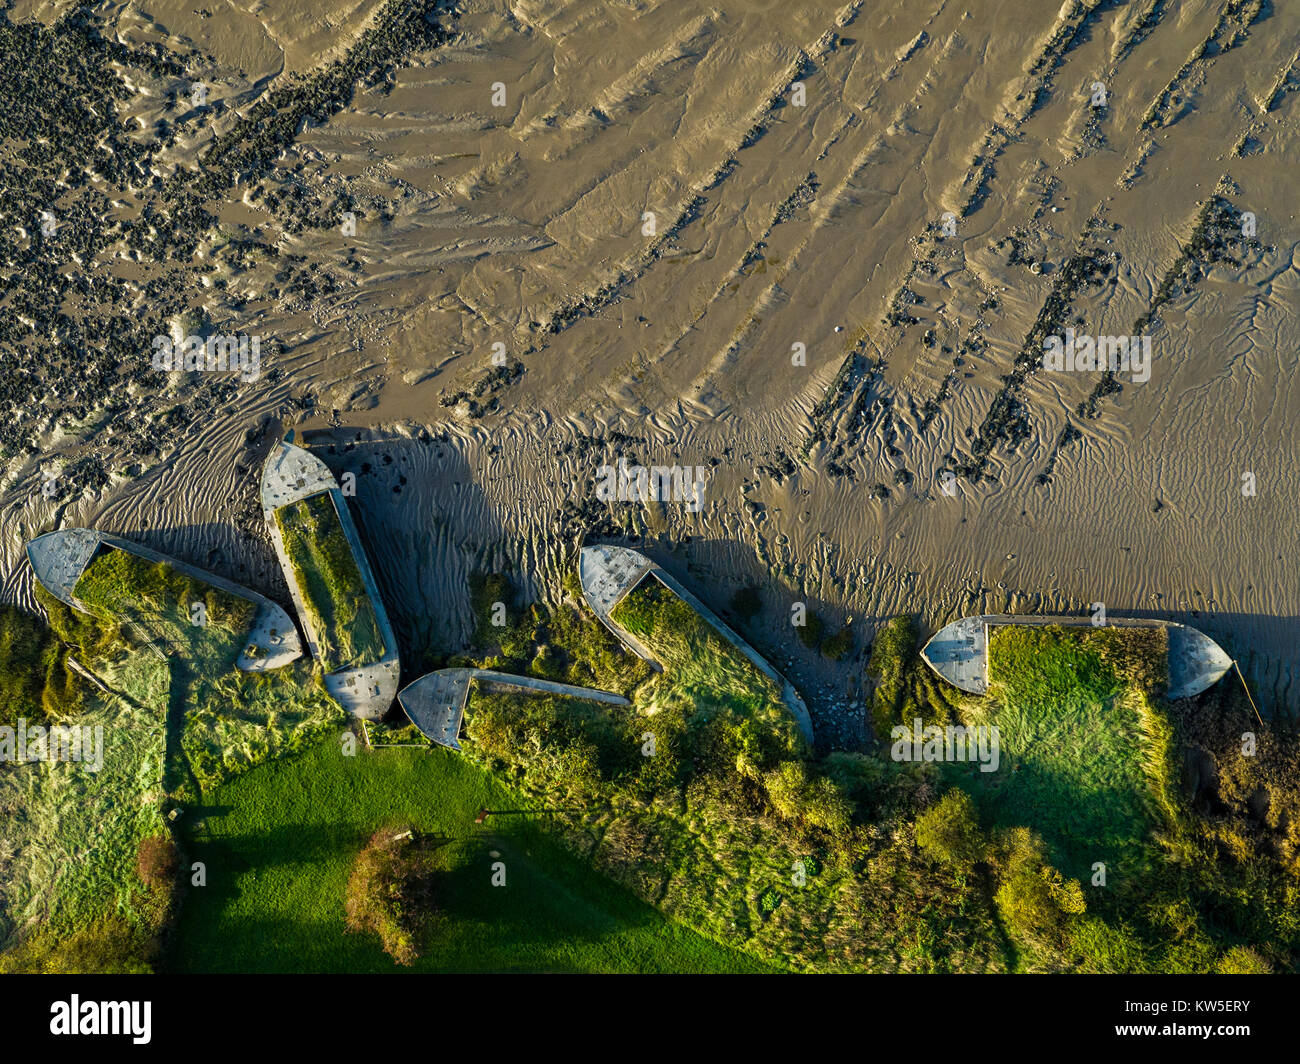 Luftaufnahme der Purton Schiffsrümpfe Schiffe Friedhof auf dem Fluss Severn, Gloucestershire, UK. Schuss mit einer Drohne durch ein UK CAA Lizenz Inhaber mit freundlicher Genehmigung. Stockfoto